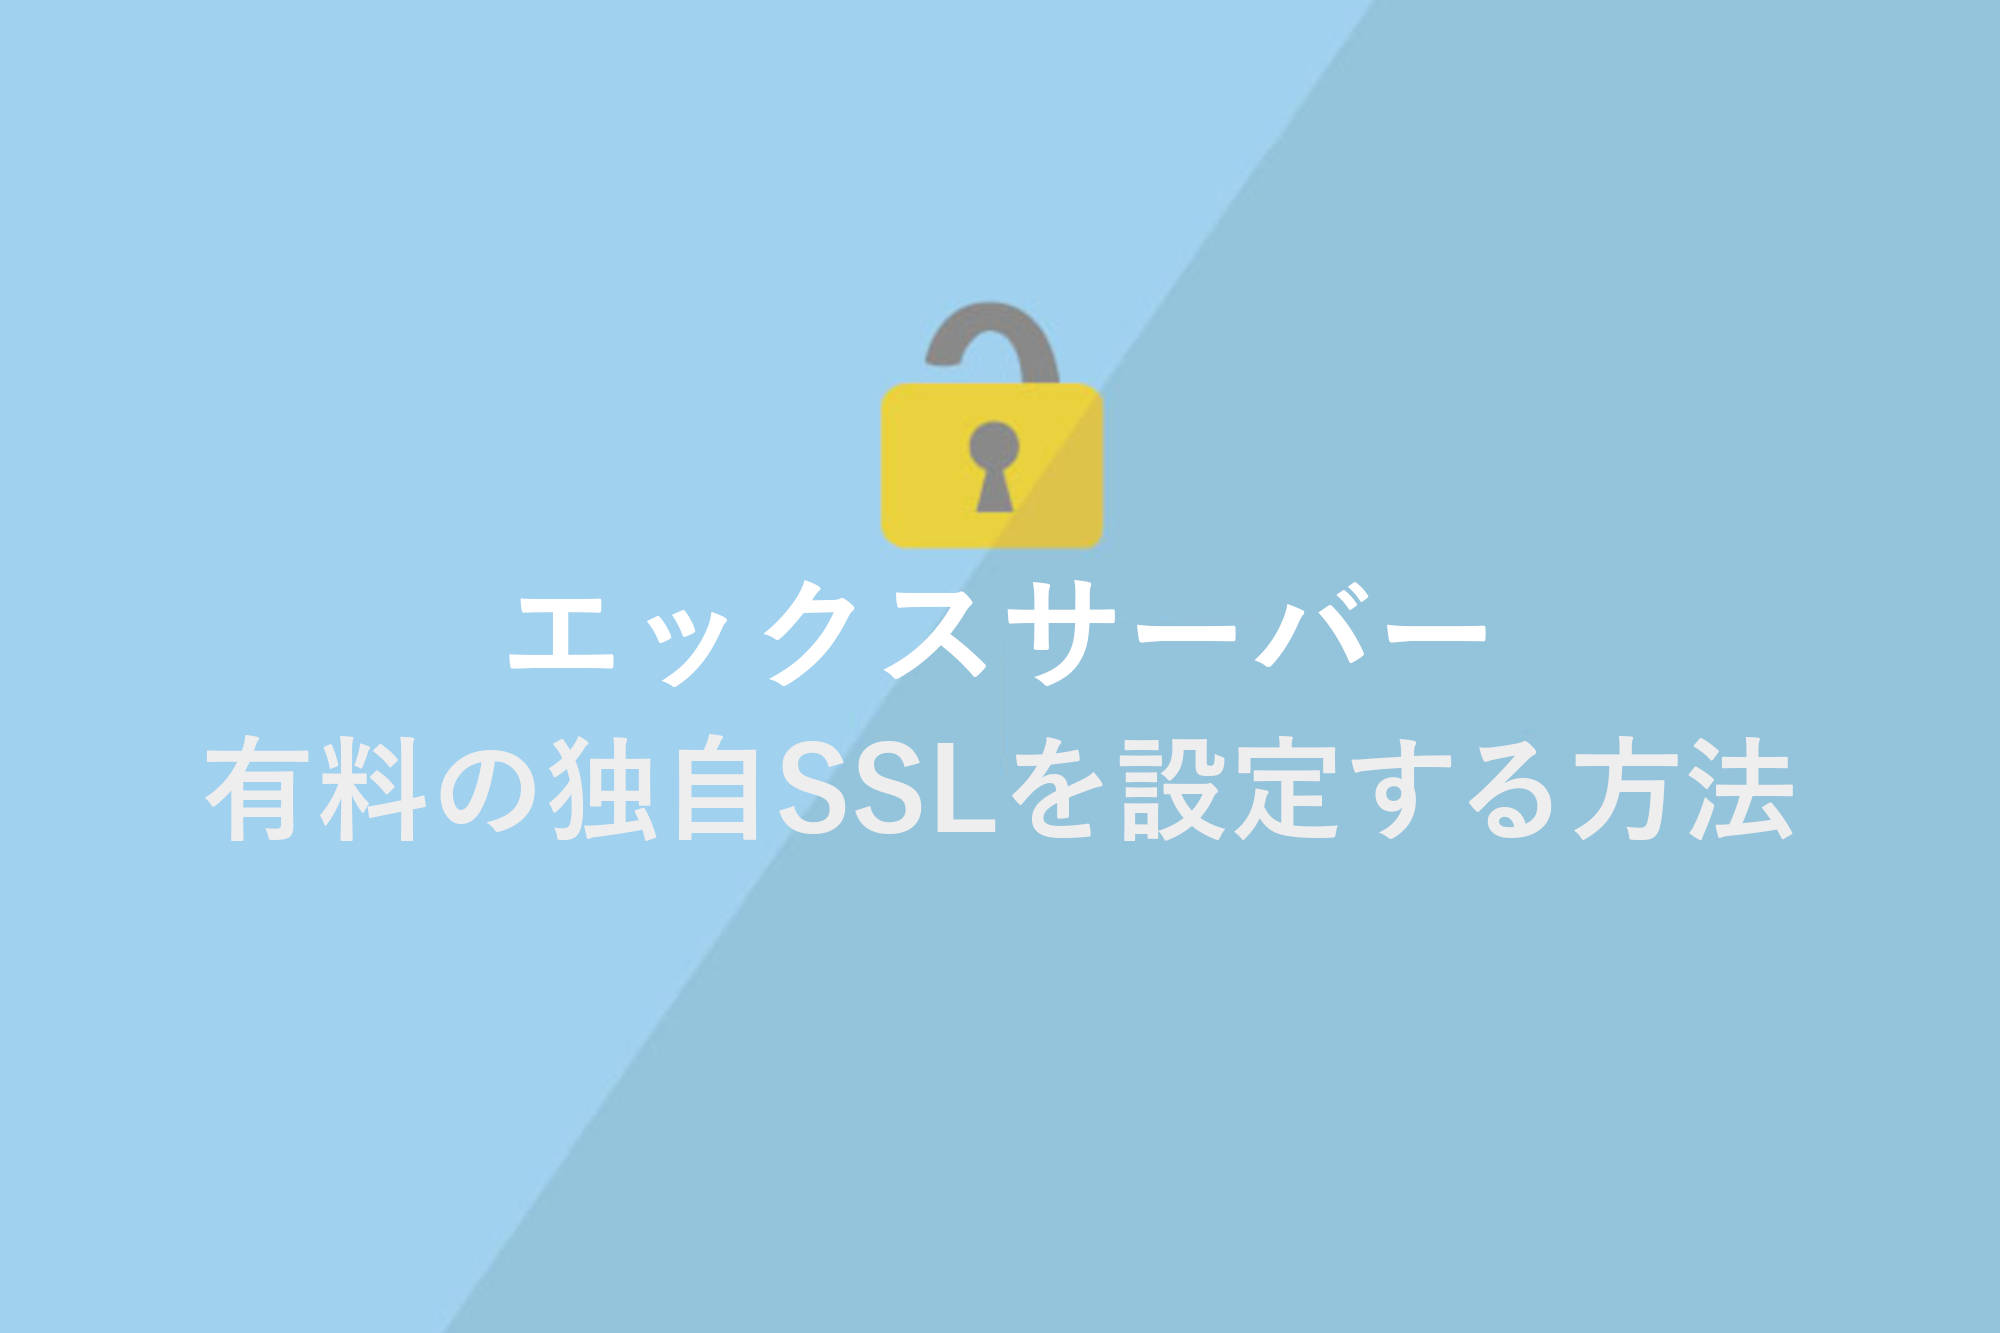 エックスサーバーで有料の独自SSLを設定する方法やメリットを解説！